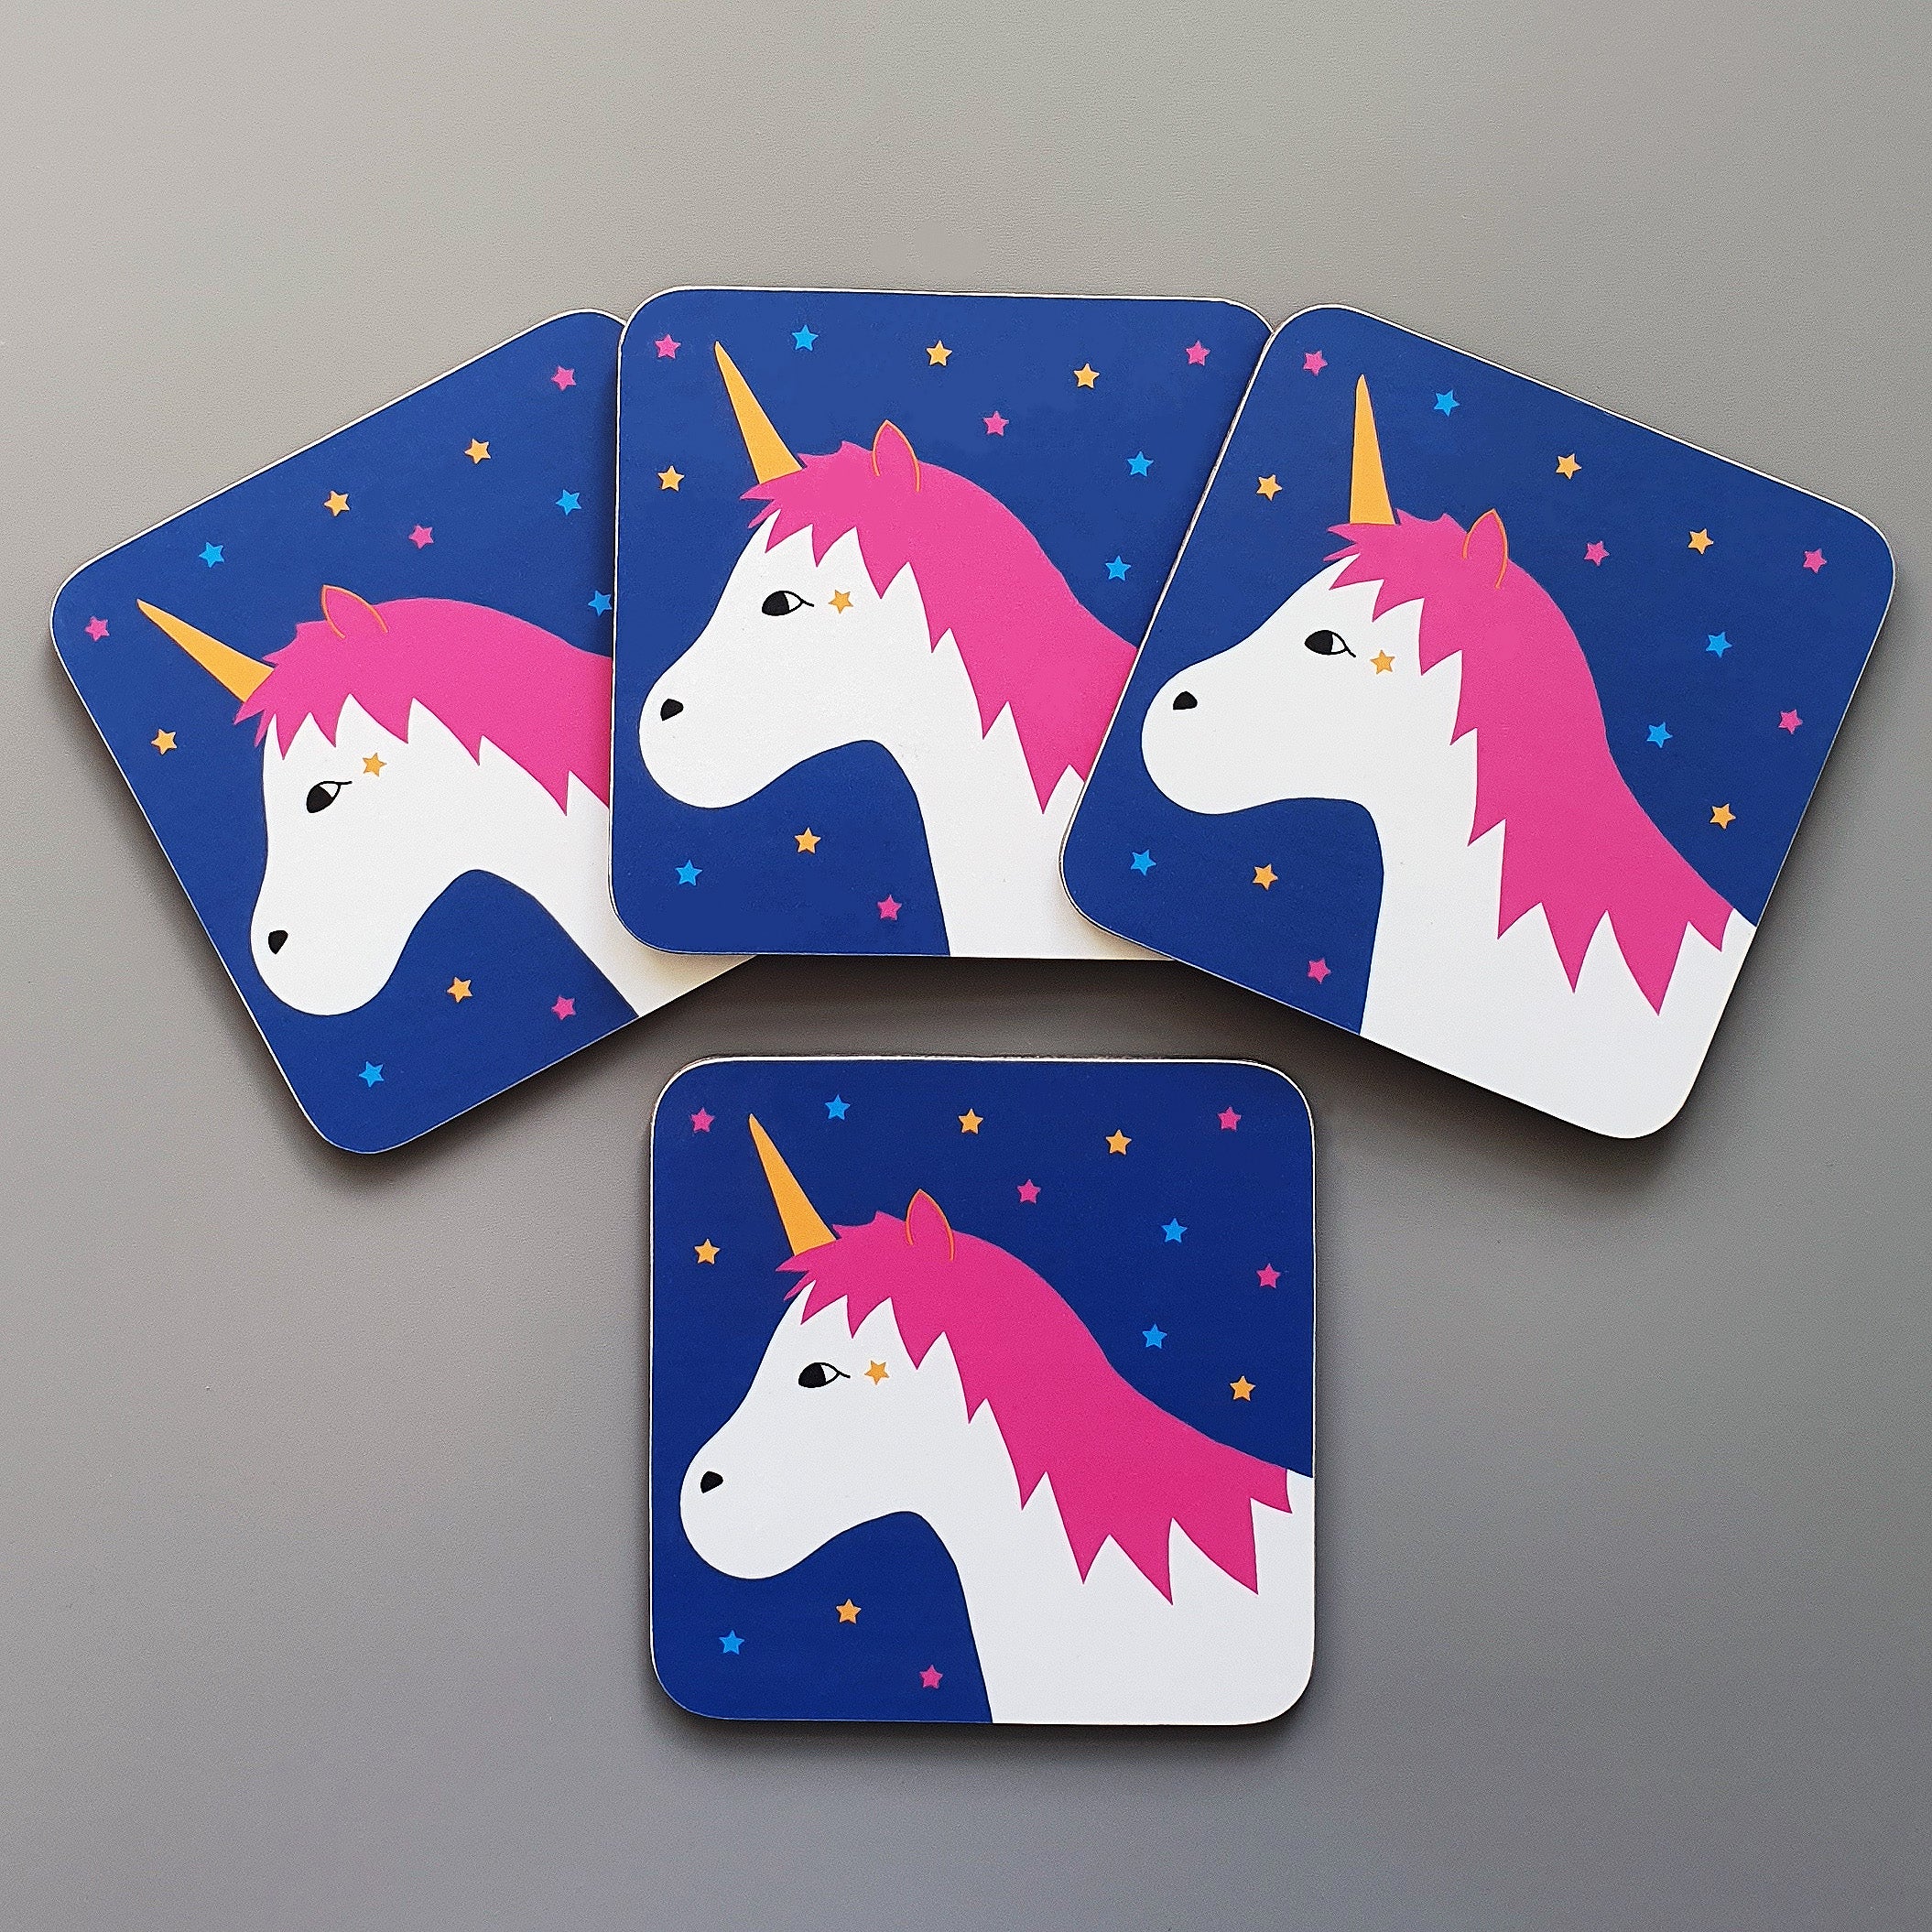 Unicorn coaster set